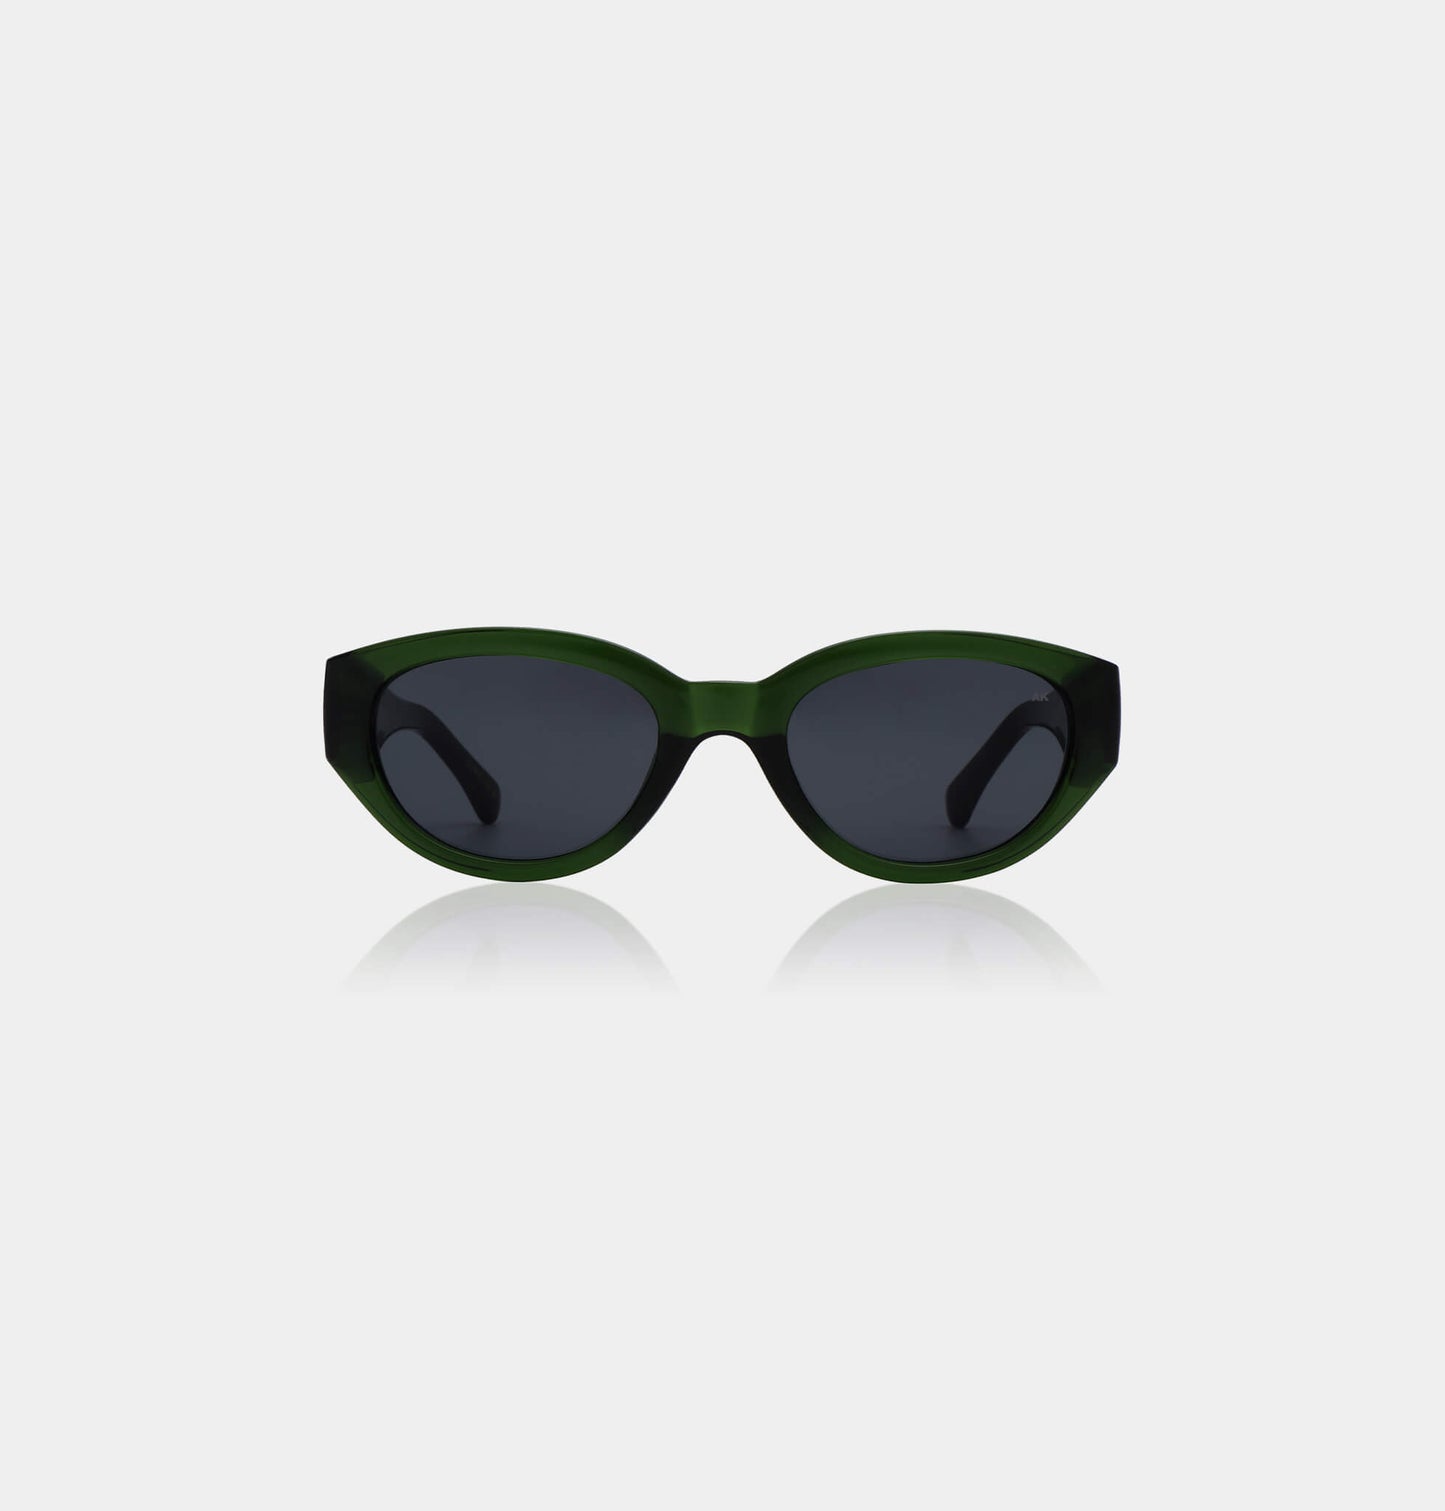 A.Kjaerbede Winnie Sunglasses in Dark Green Transparent